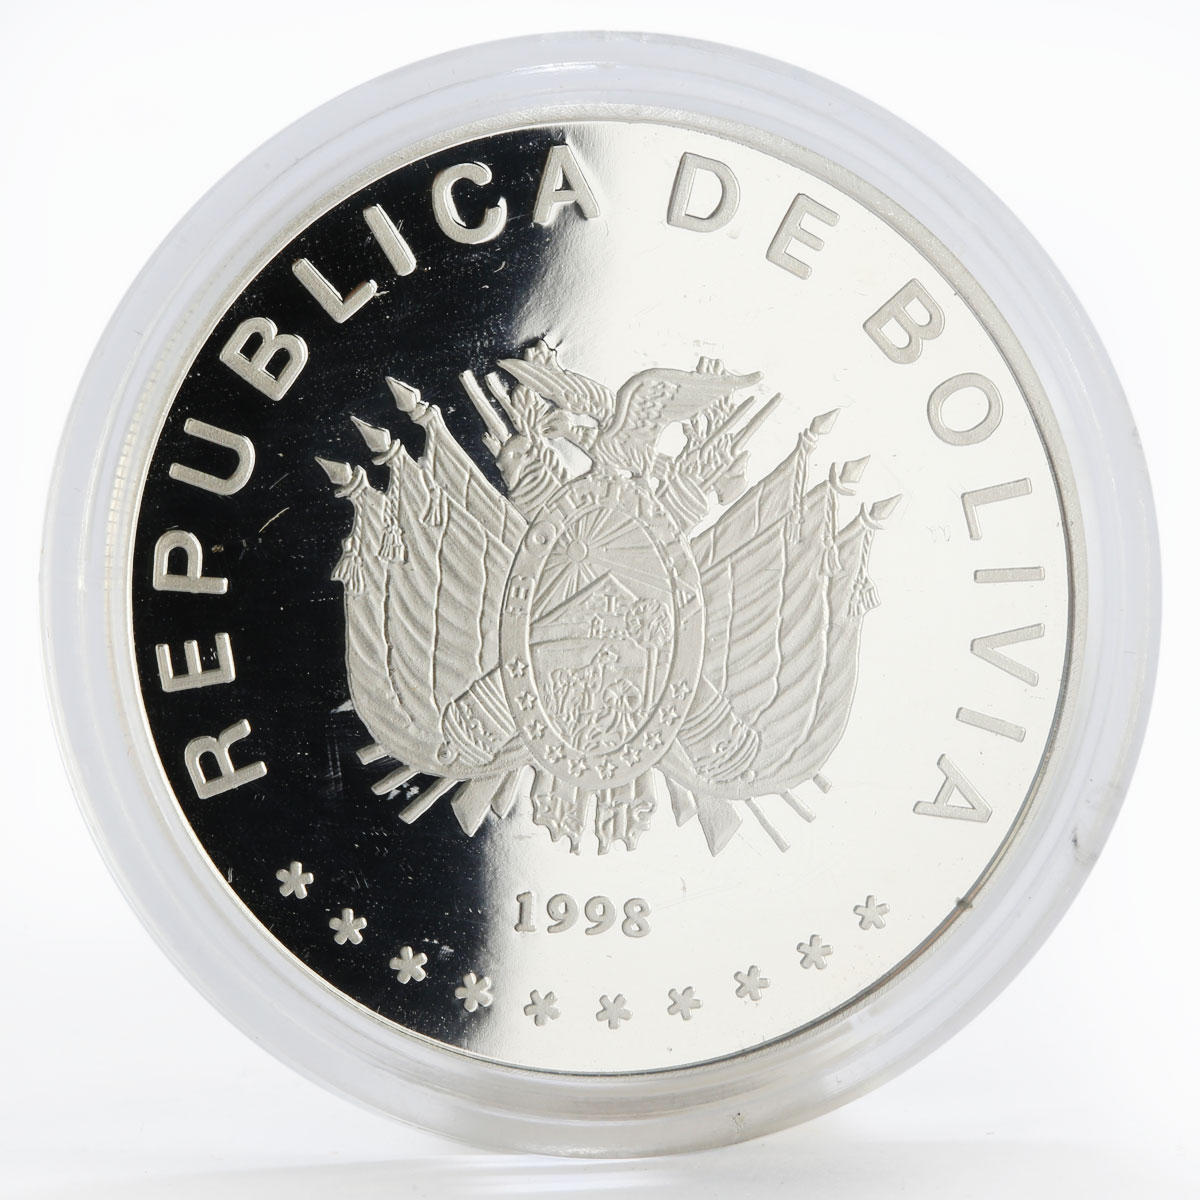 Bolivia 50 boliviano 450th Anniversary of La Paz church proof silver coin 1998